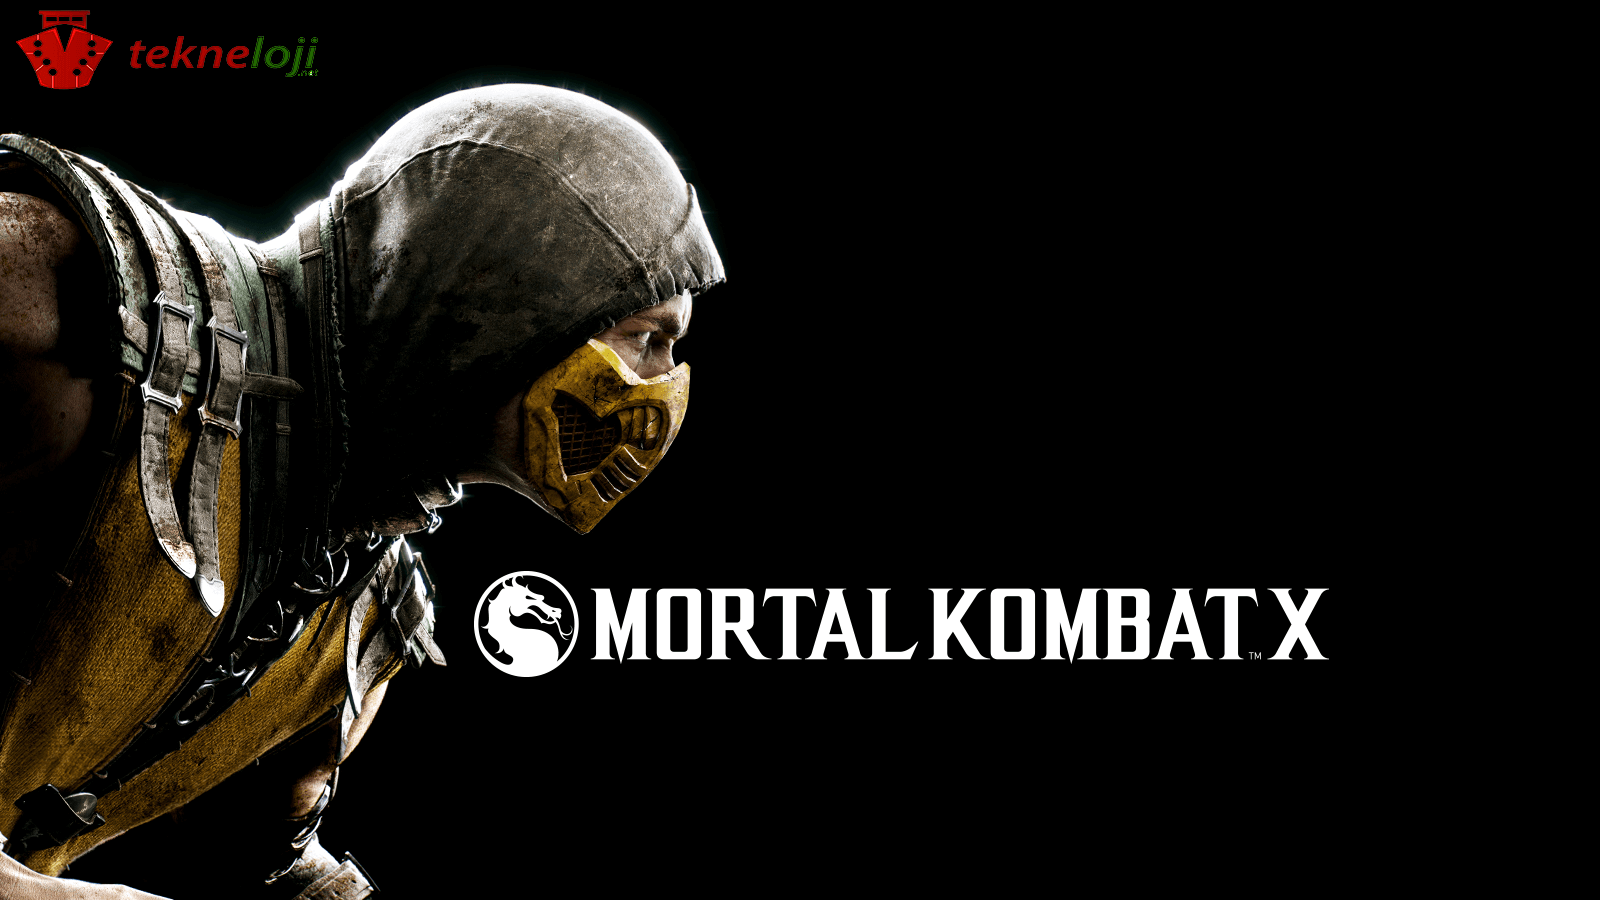 500.000 Dolar Değerindeki Mortal Kombat X E-Sport Turnuvası Duyuruldu !